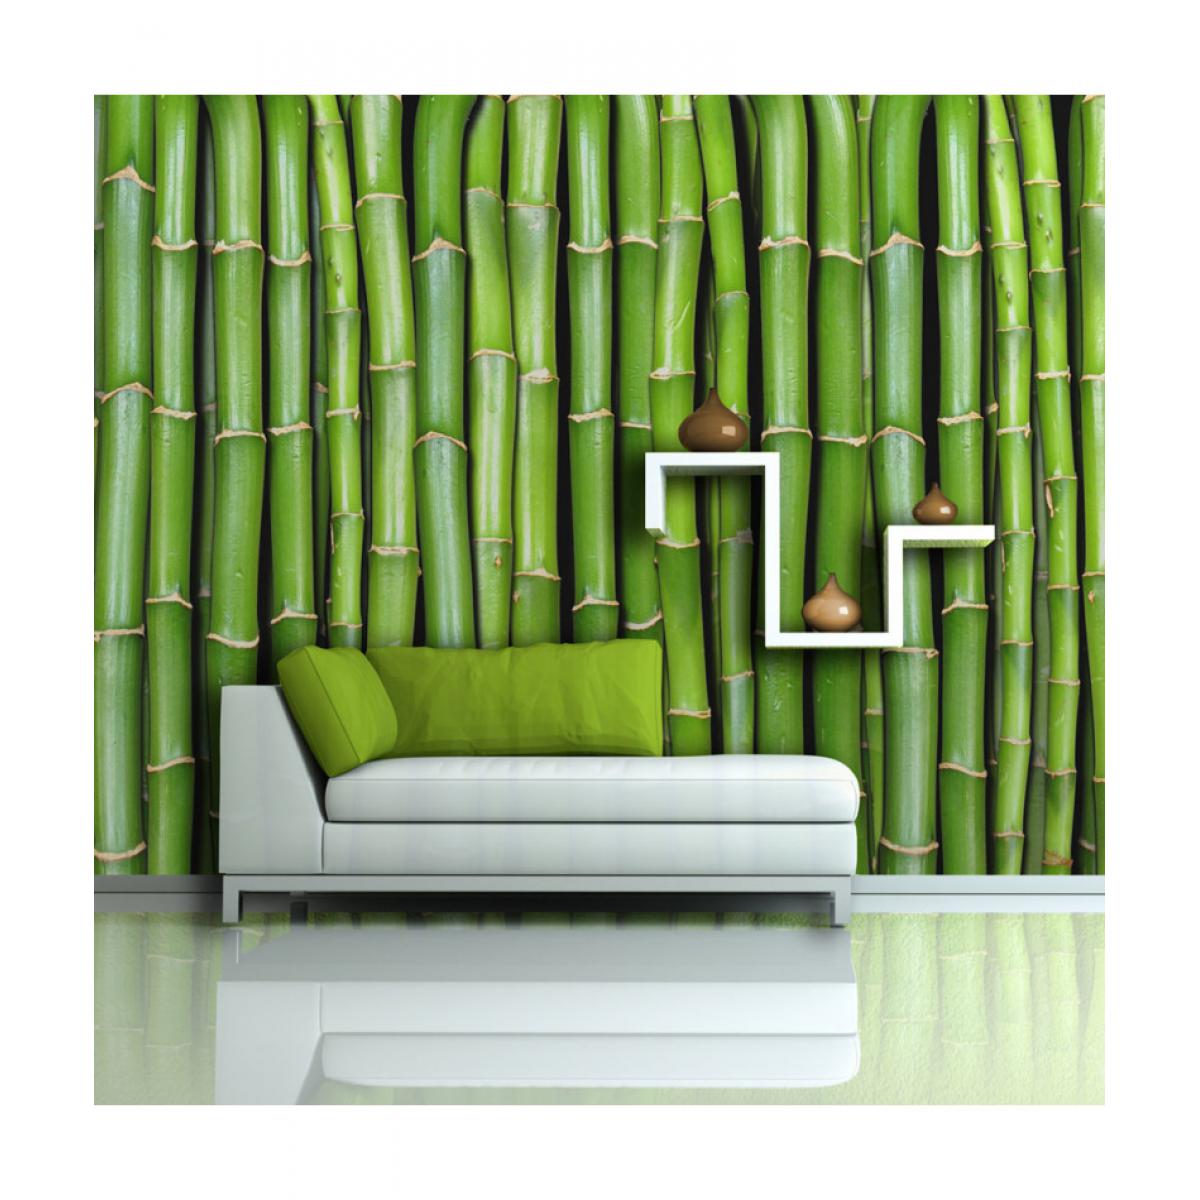 Artgeist - Papier peint - Mur vert bambou 450x270 - Papier peint